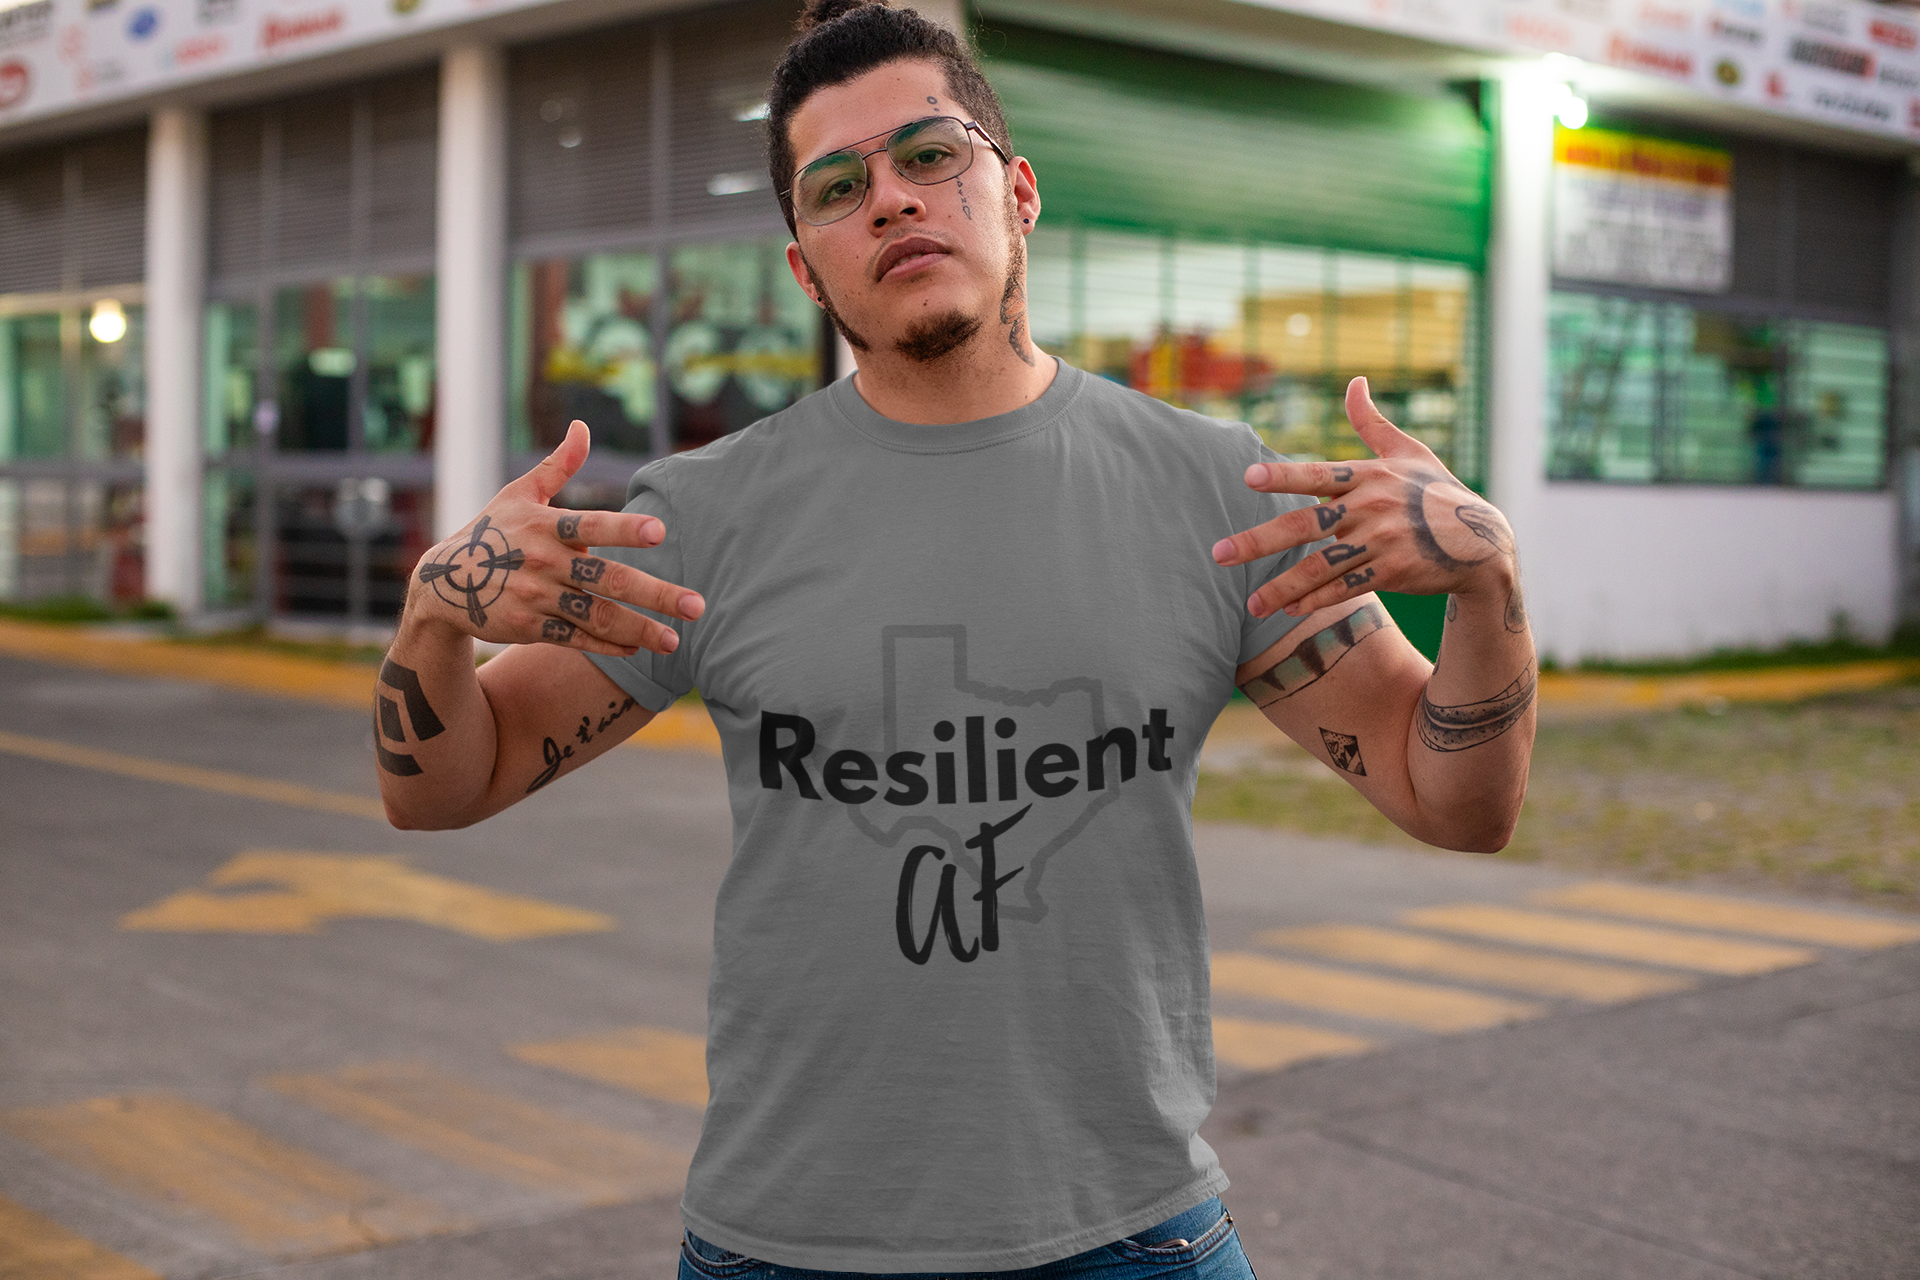 ResilientAF Texas Short Sleeve T-shirt